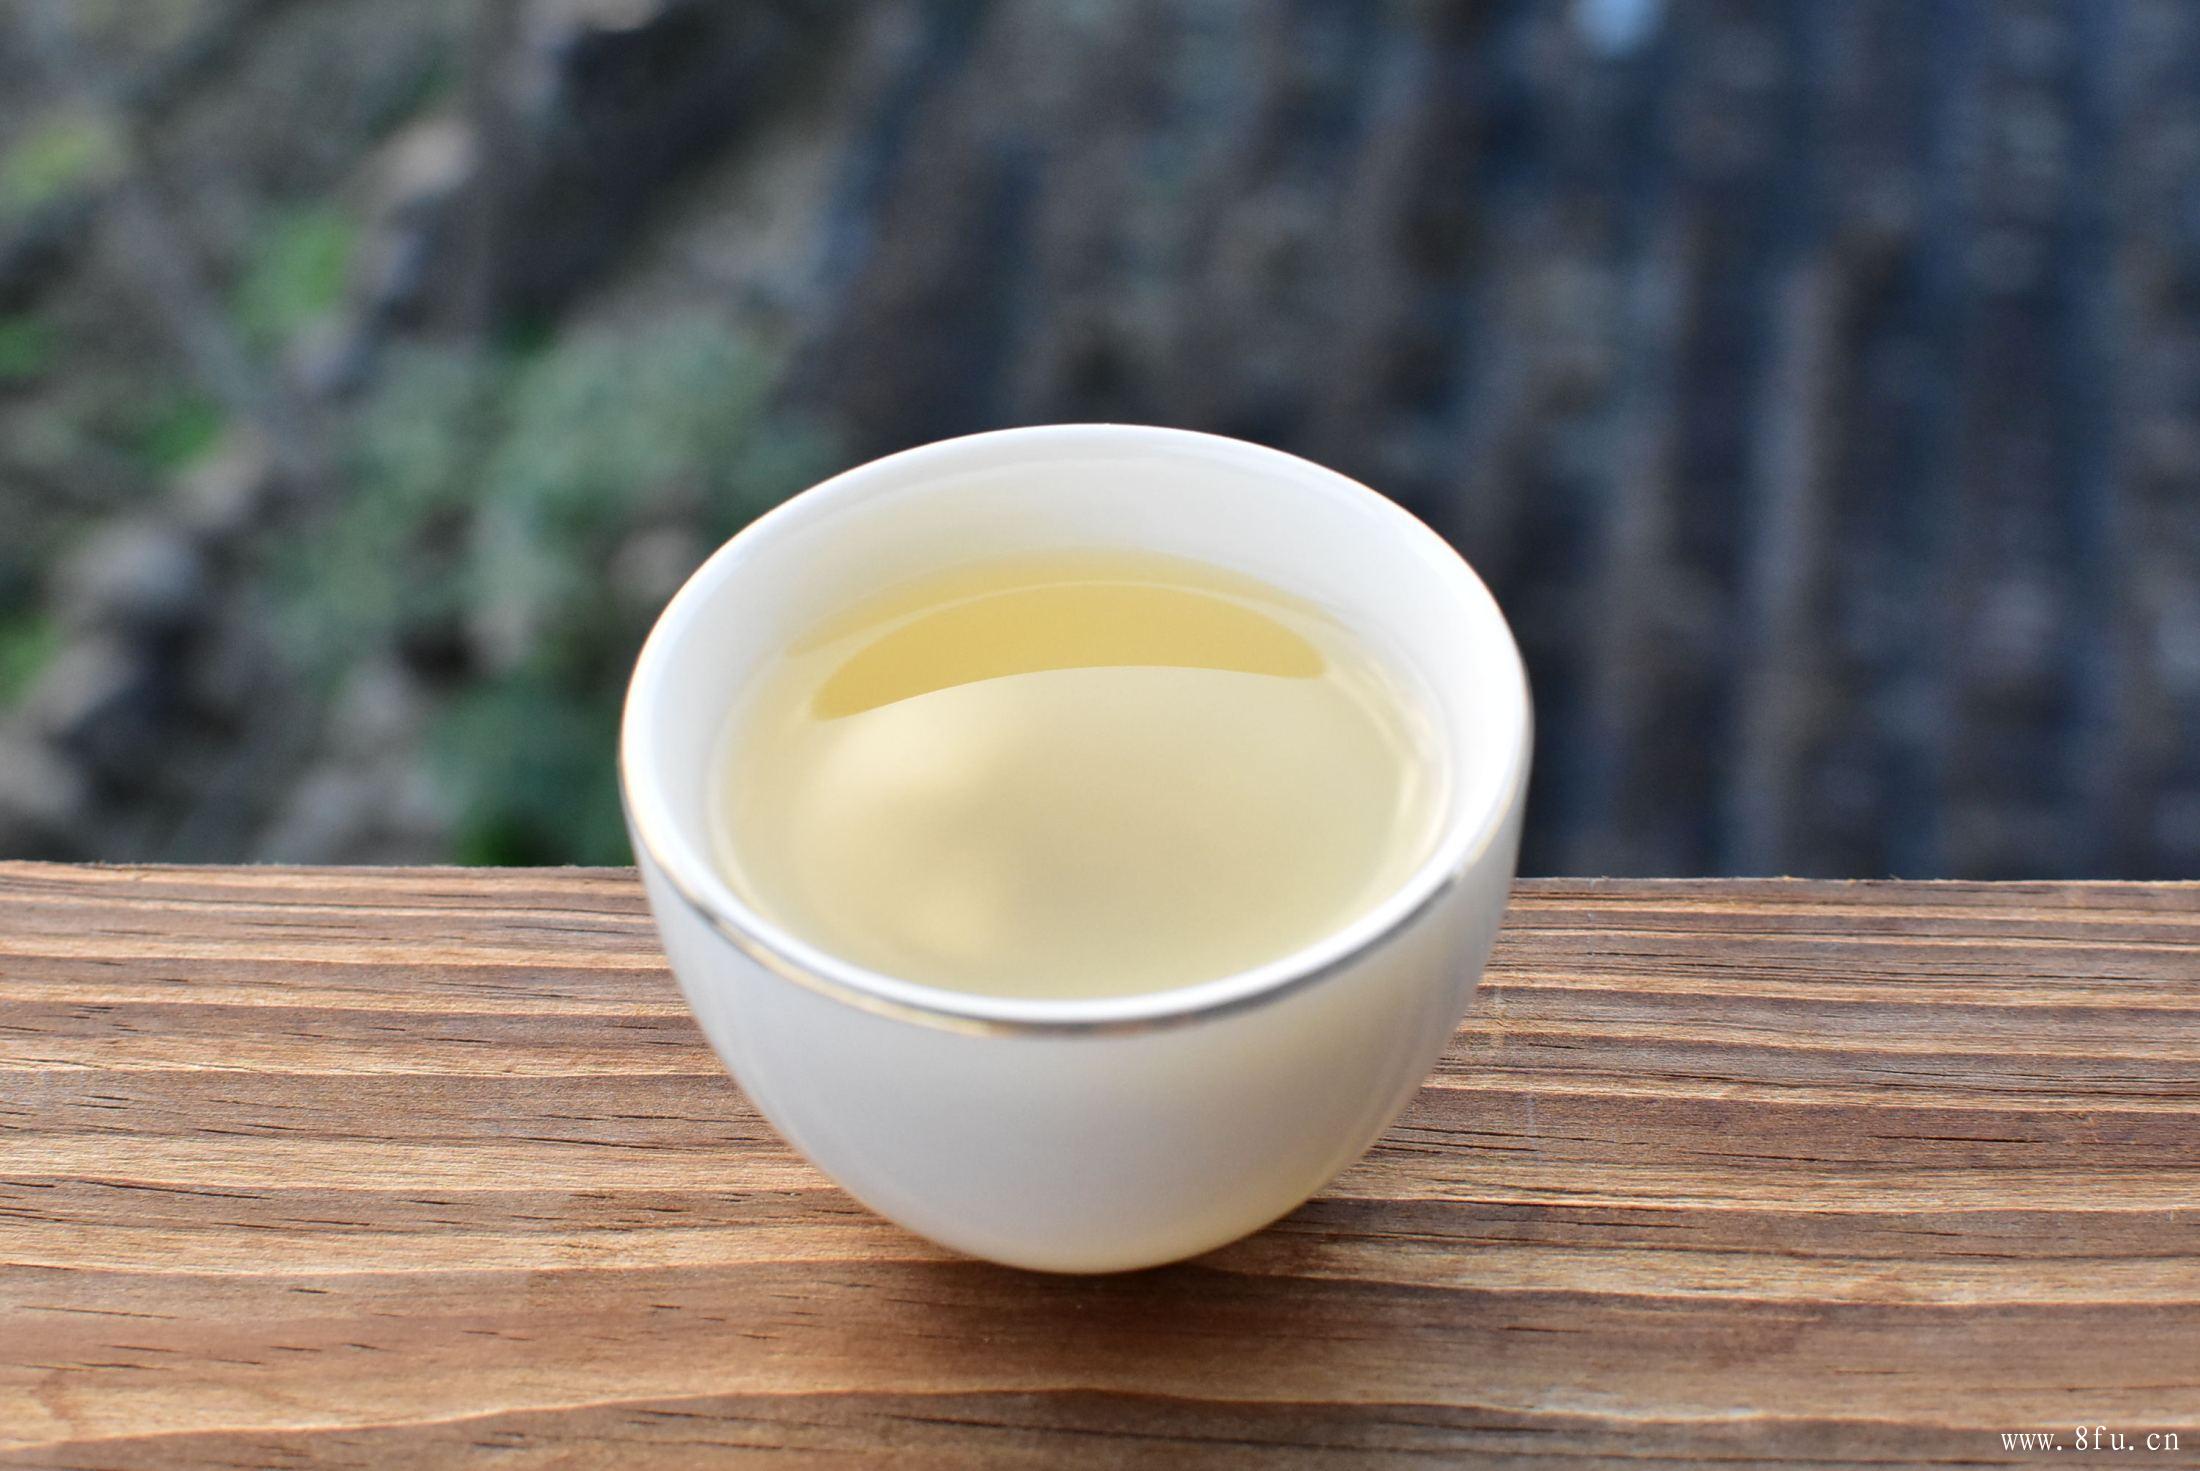 福鼎白茶萎凋方式主要是室外萎凋,白茶采摘时间